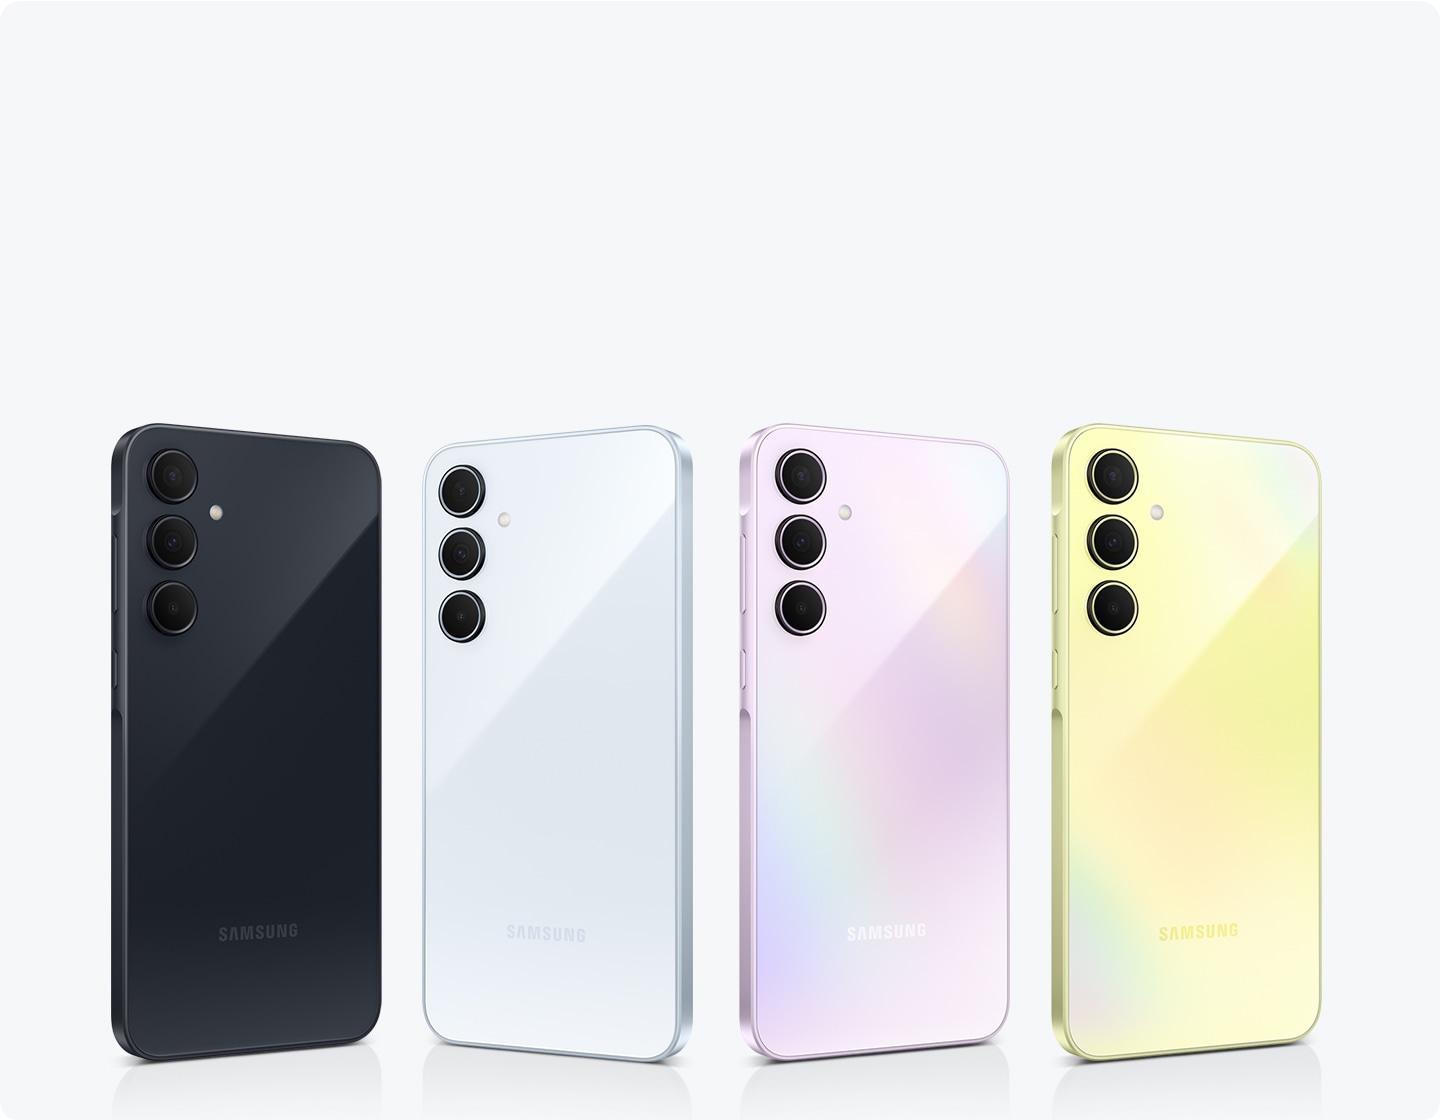 Четыре смартфона Samsung разного цвета, расположенные в ряд:  Тёмно-синий (Awesome Navy), Голубой (Awesome Iceblue), Лаванда (Awesome Lilac) и Жёлтый (Awesome Lemon). Каждый телефон оснащен тремя камерами на задней панели.